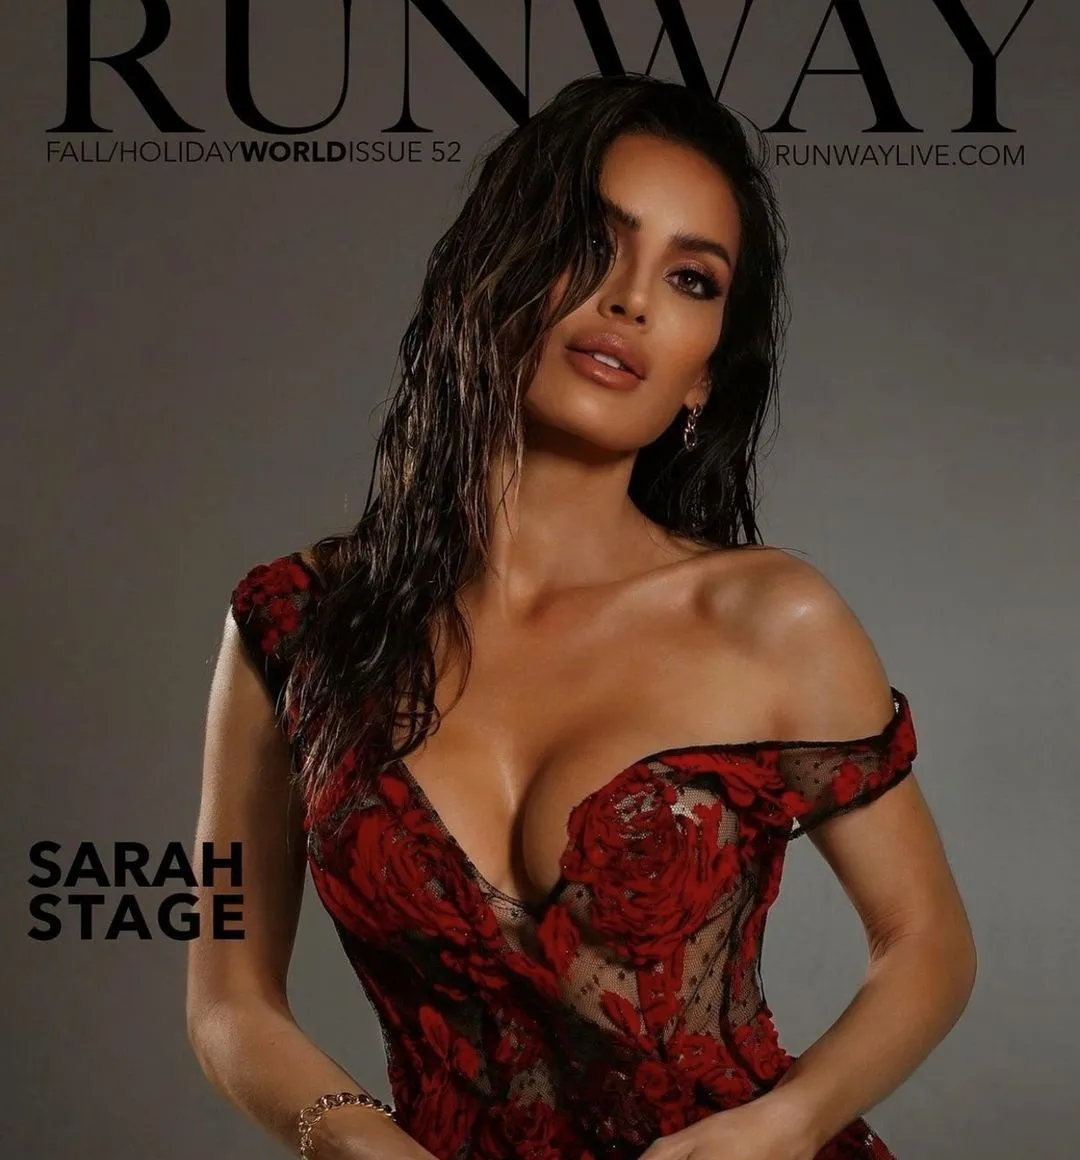 RUNWAY magazine - Sarah Stage